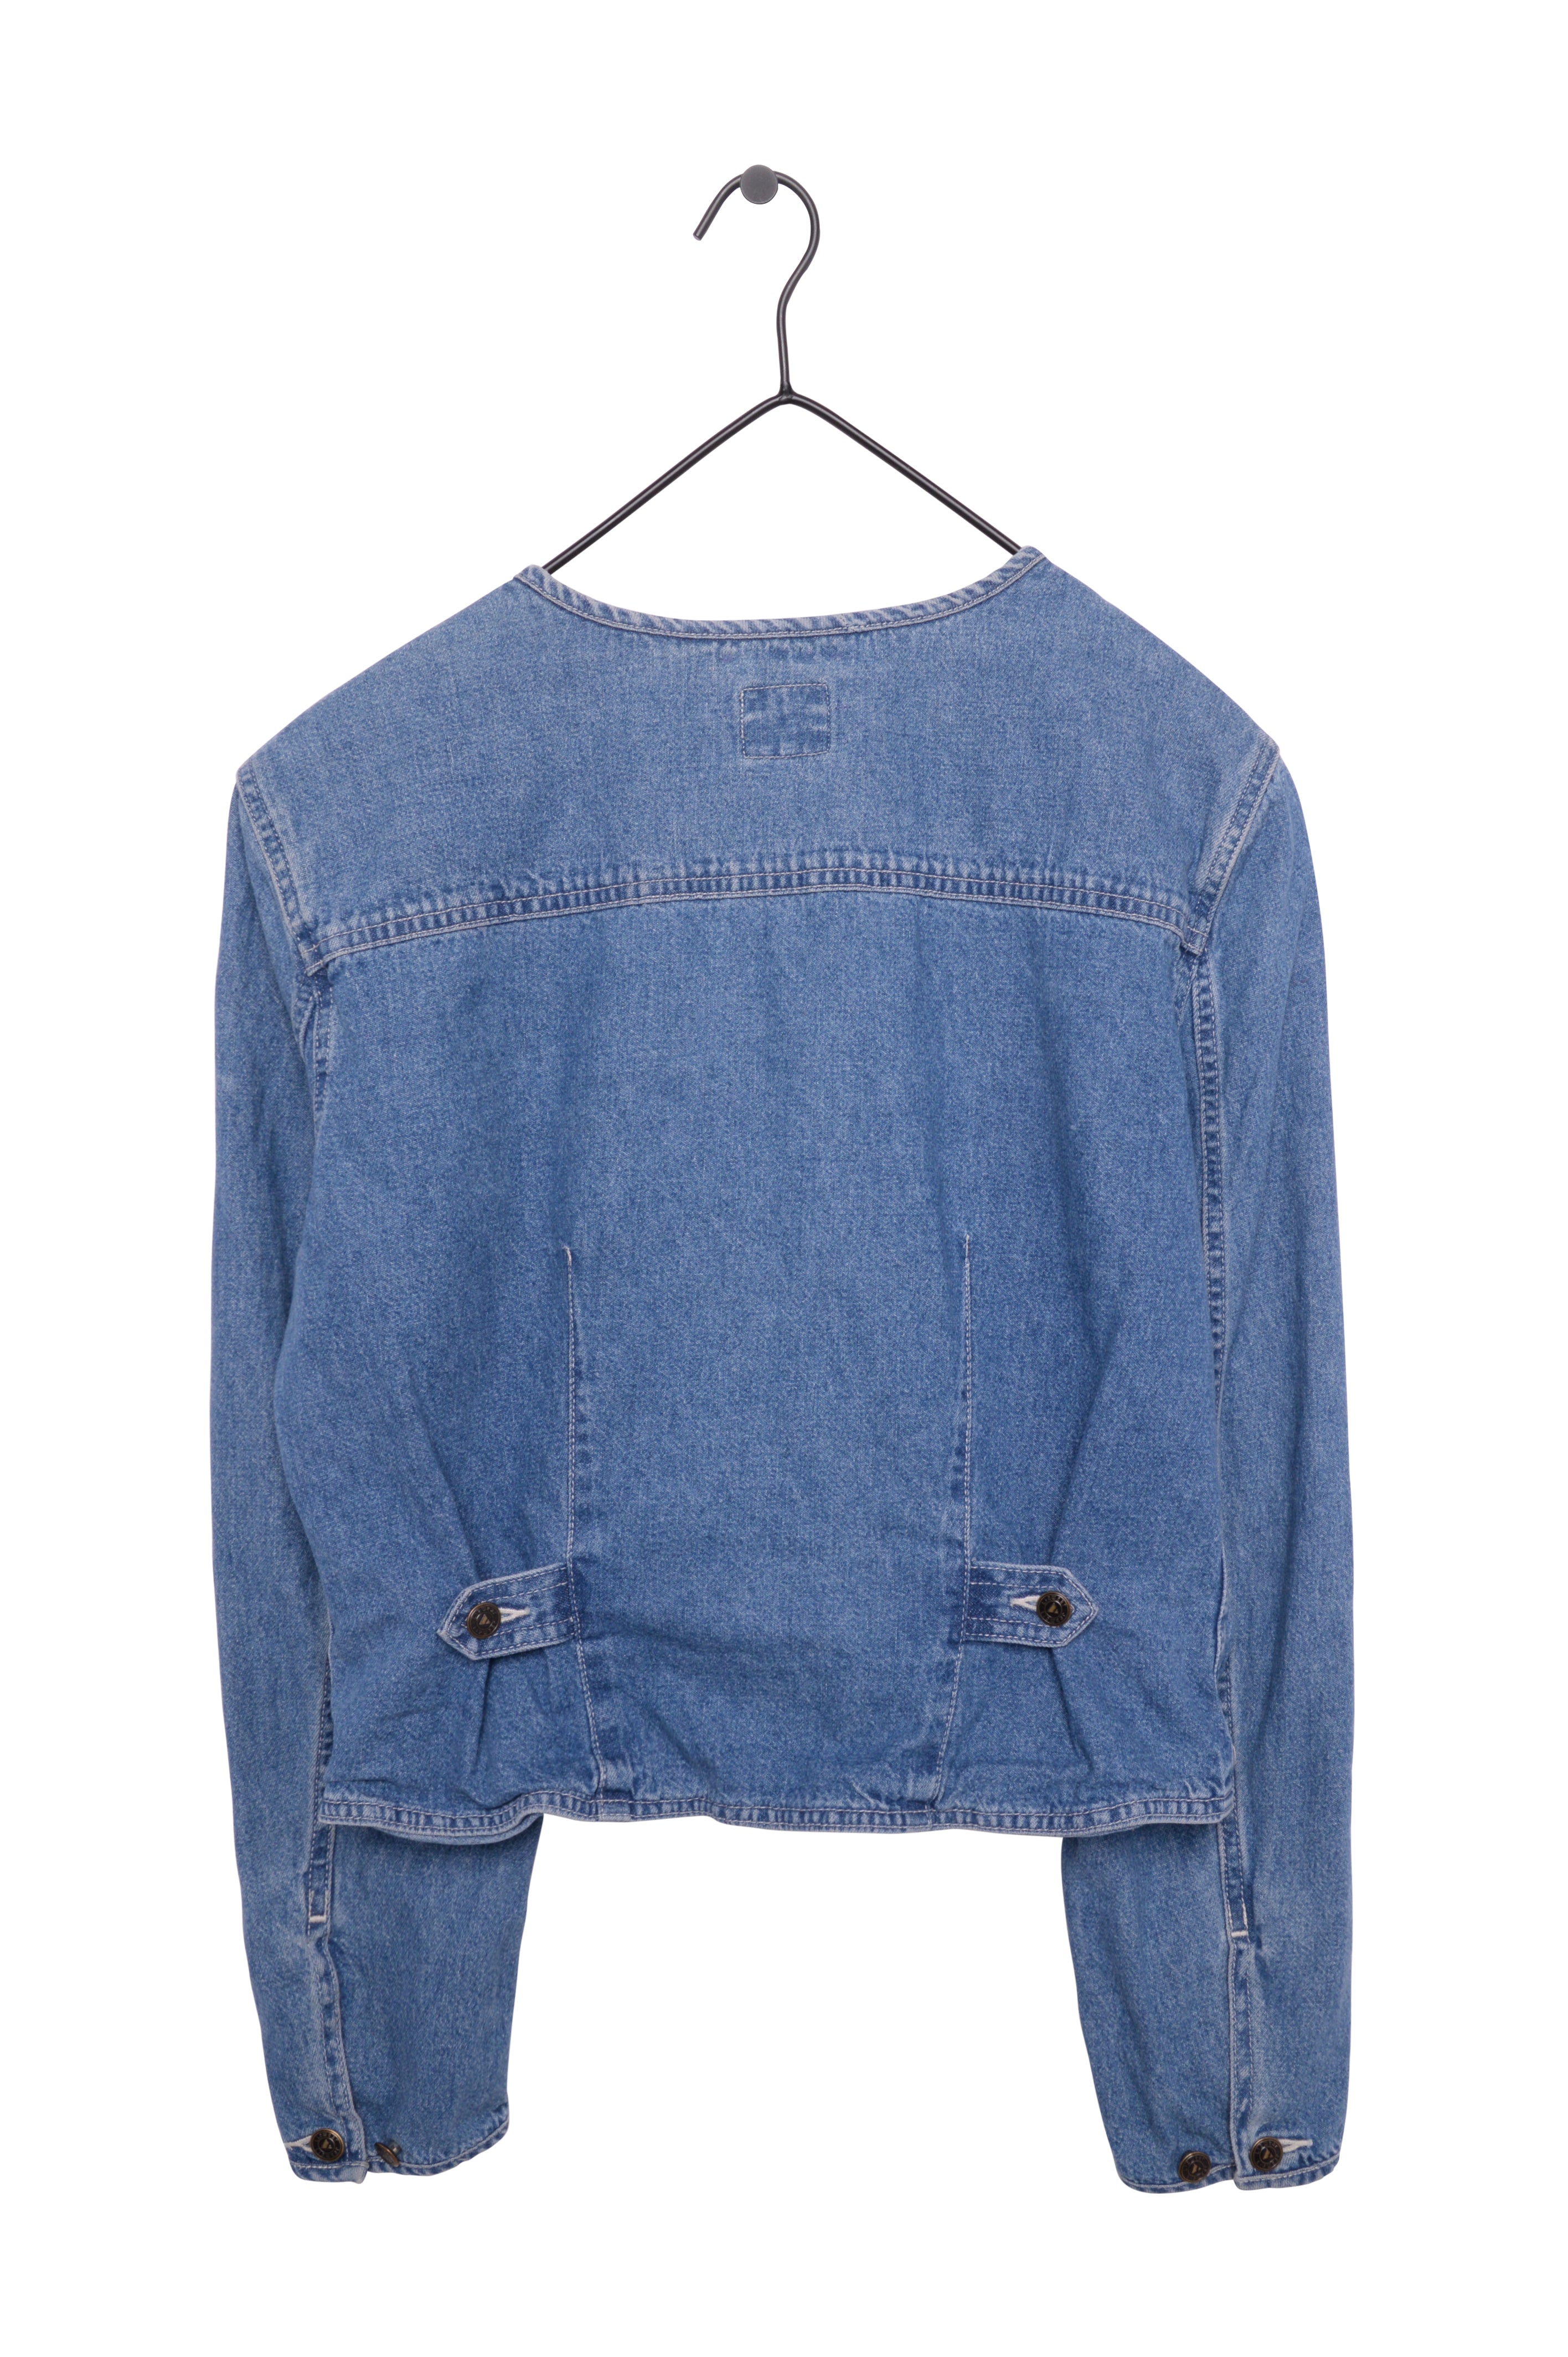 Japanese Brand Vintage Kansai Jeans Zip Up Denim Shirt | Grailed